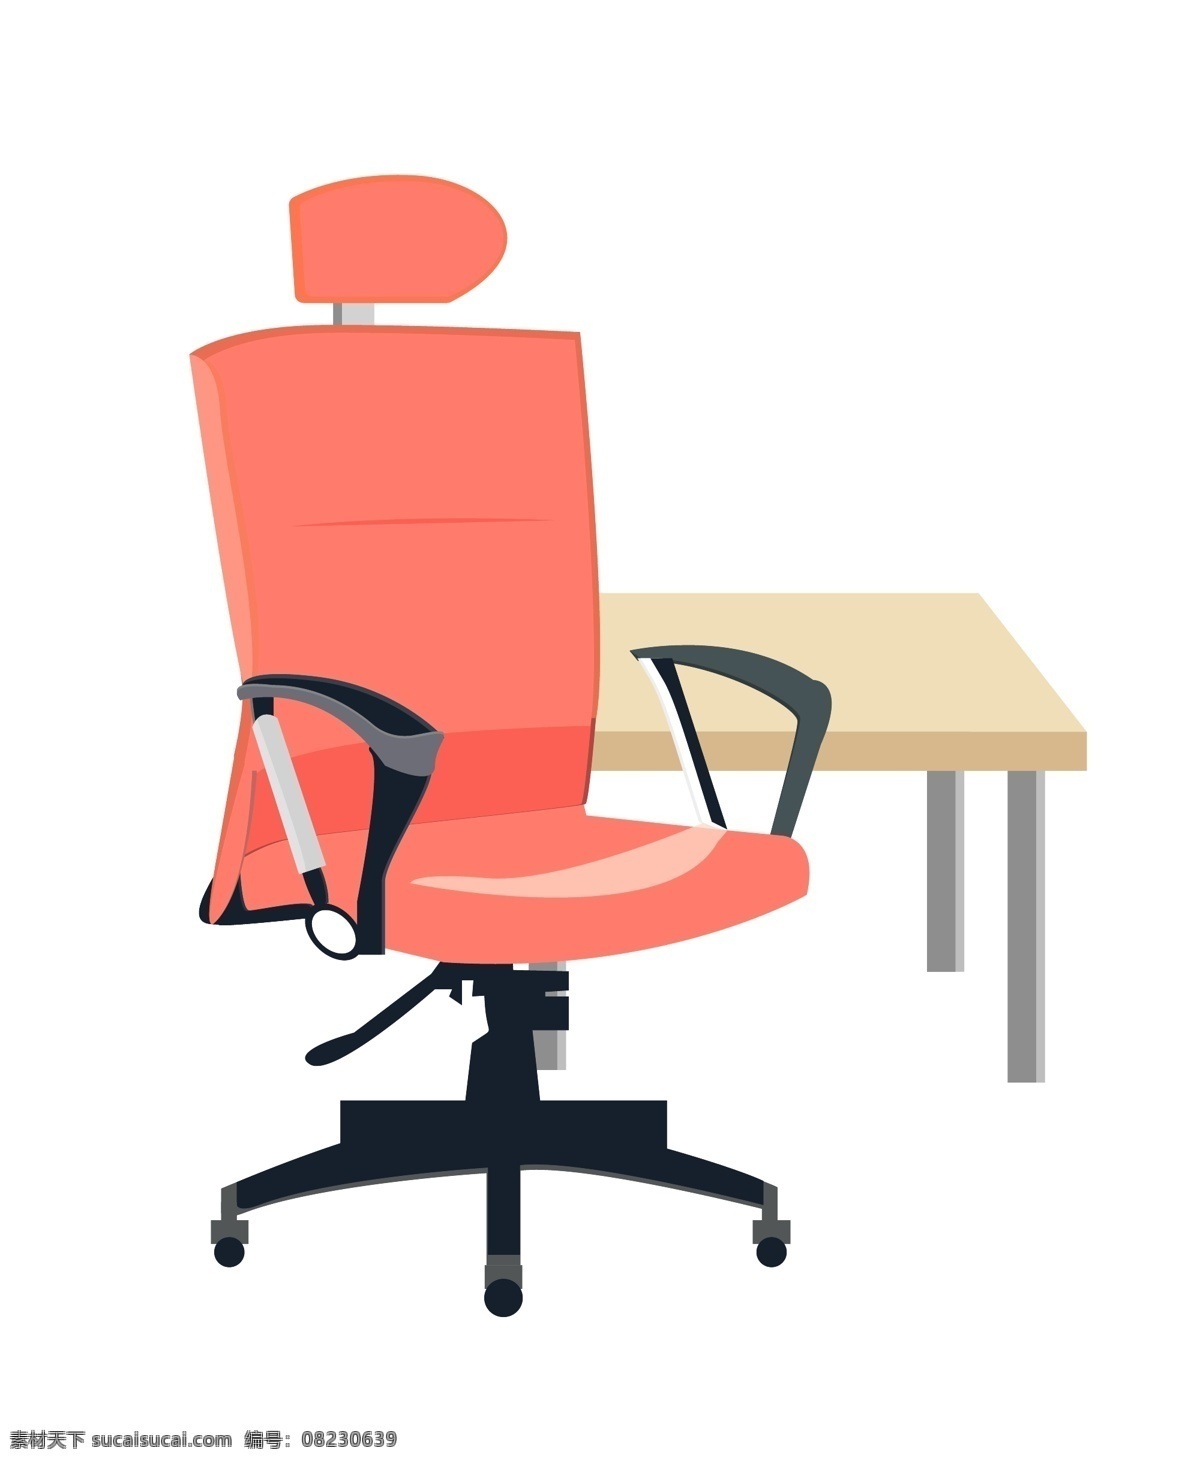 办公家具椅子 办公用品 椅子 桌子